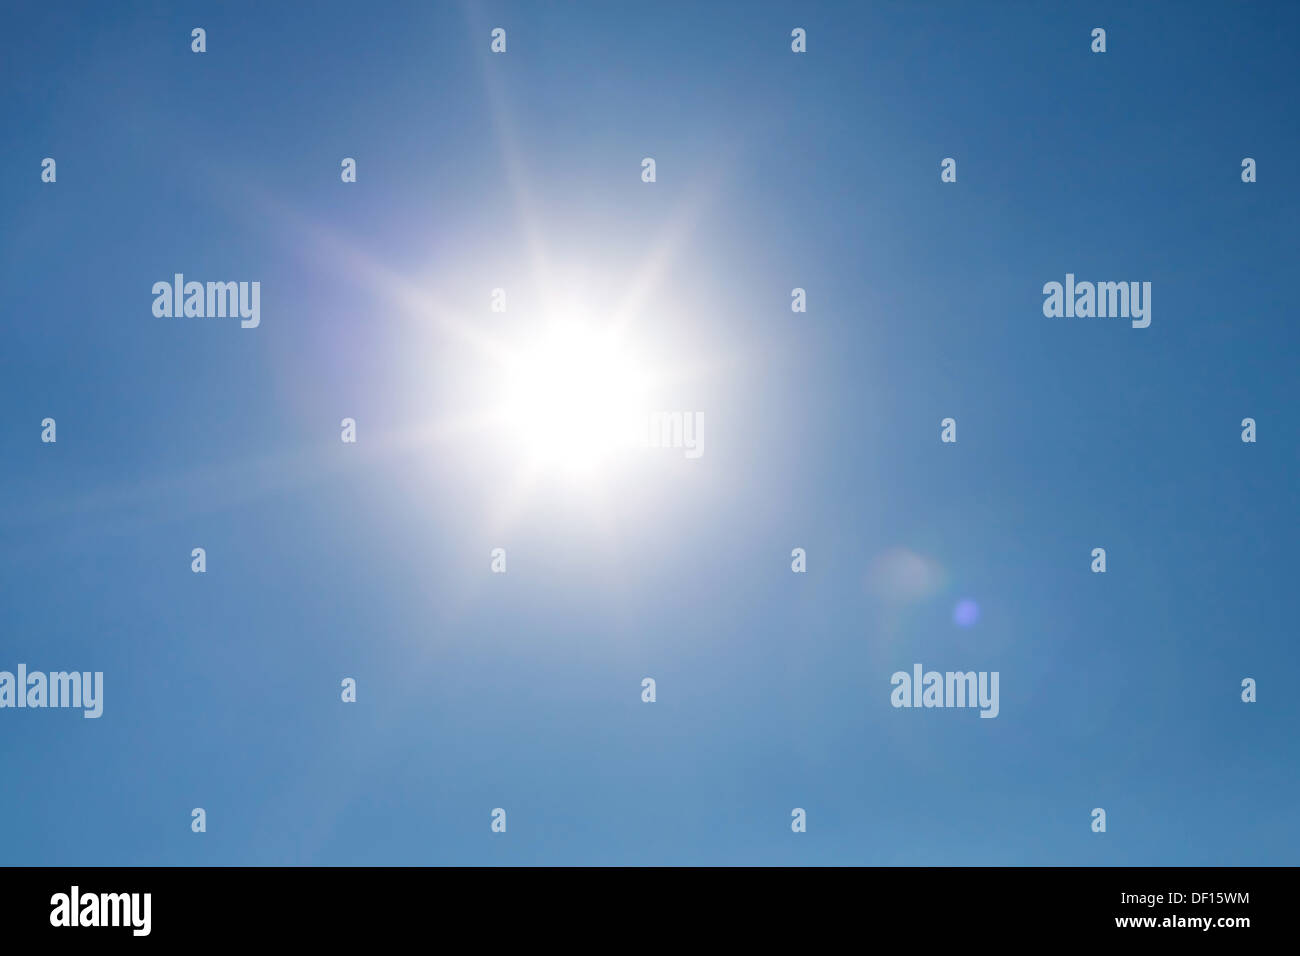 Lente Fotográfica Real efecto de resplandor del sol en el cielo azul claro Foto de stock